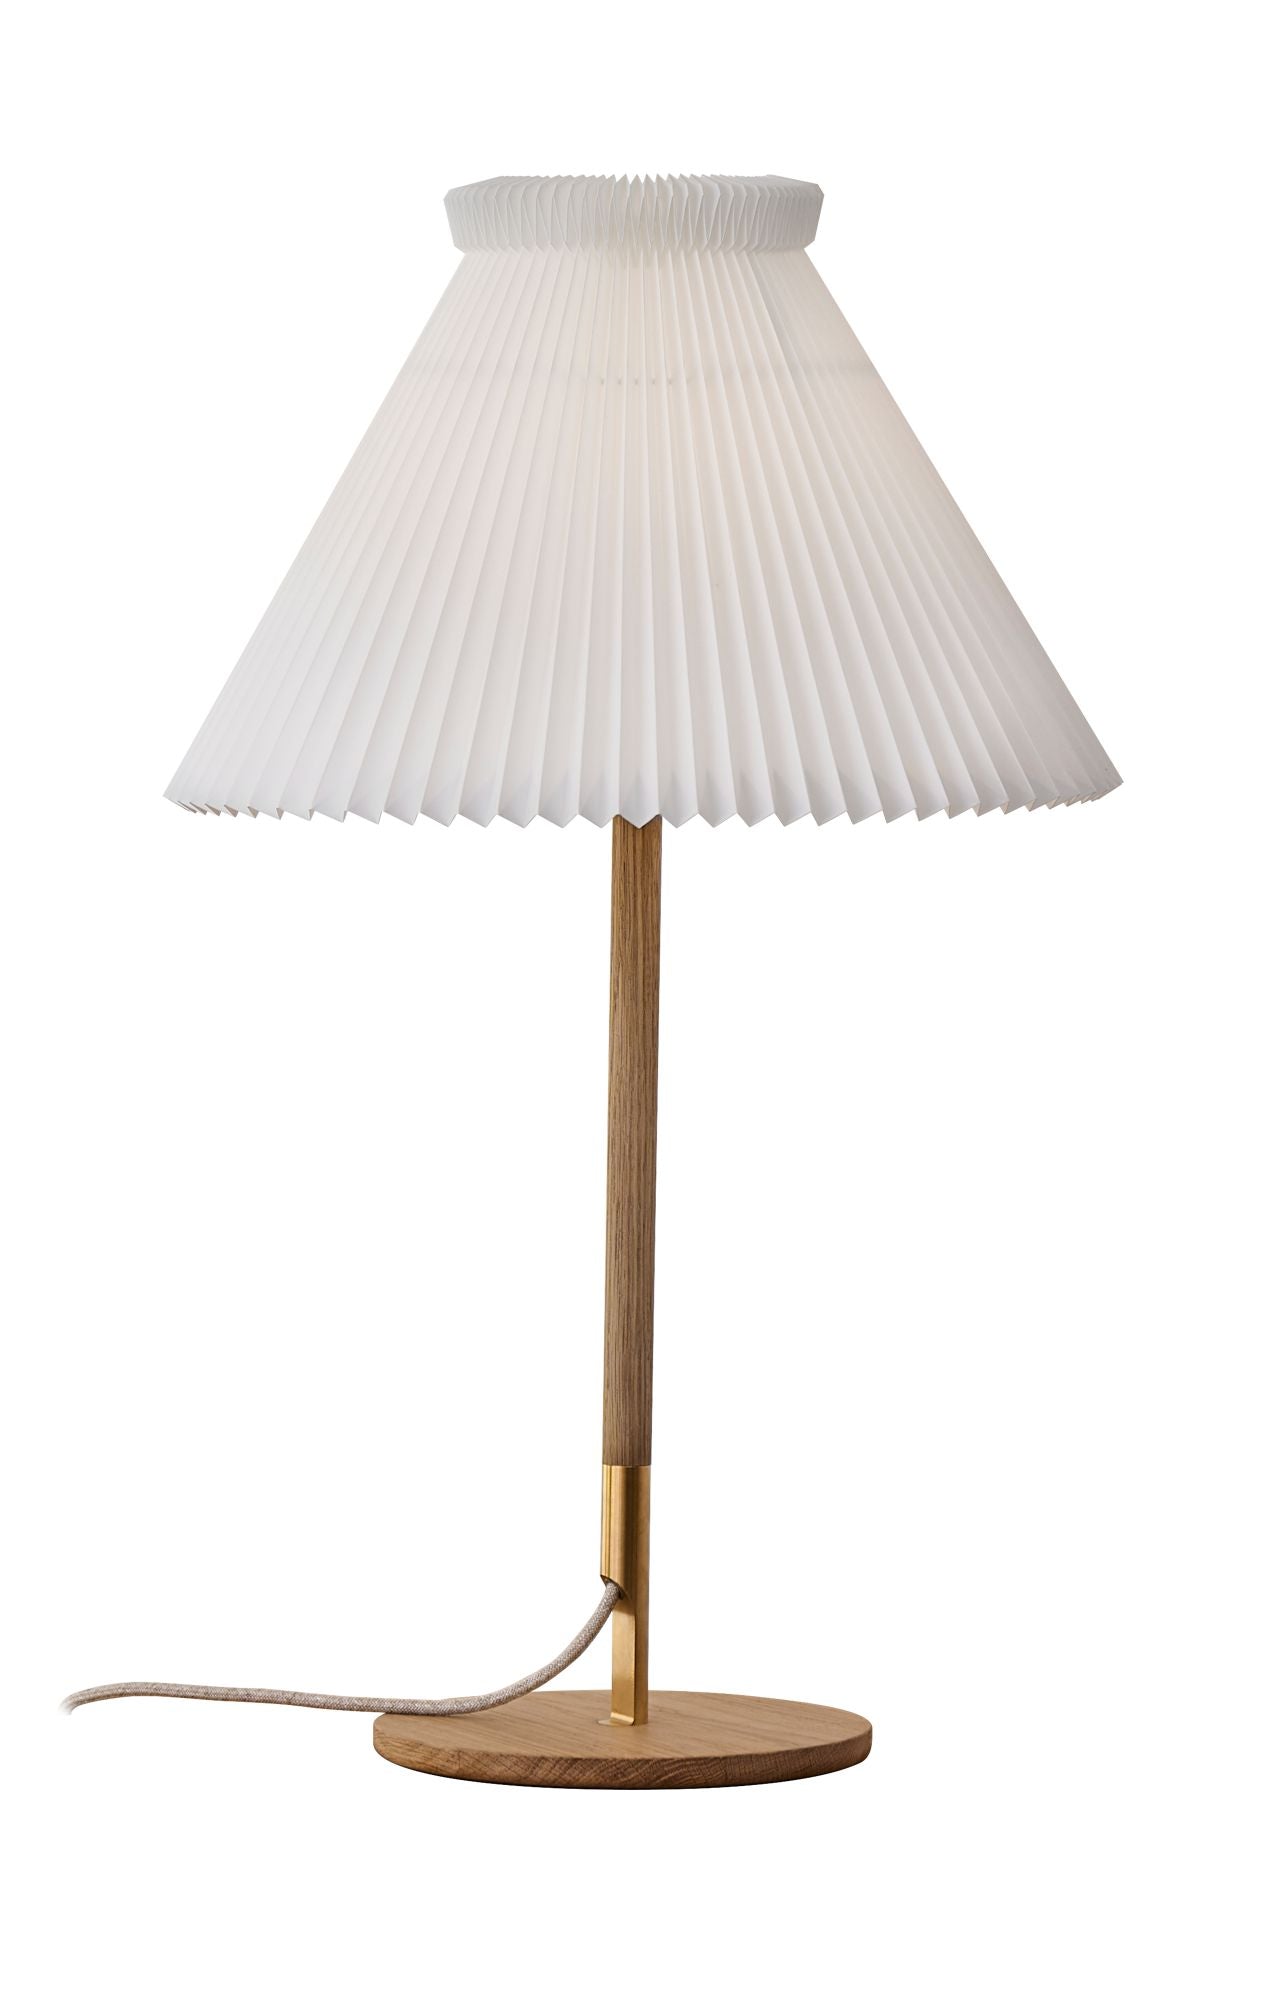 Le Klint Lampe de table 328 T, chêne clair